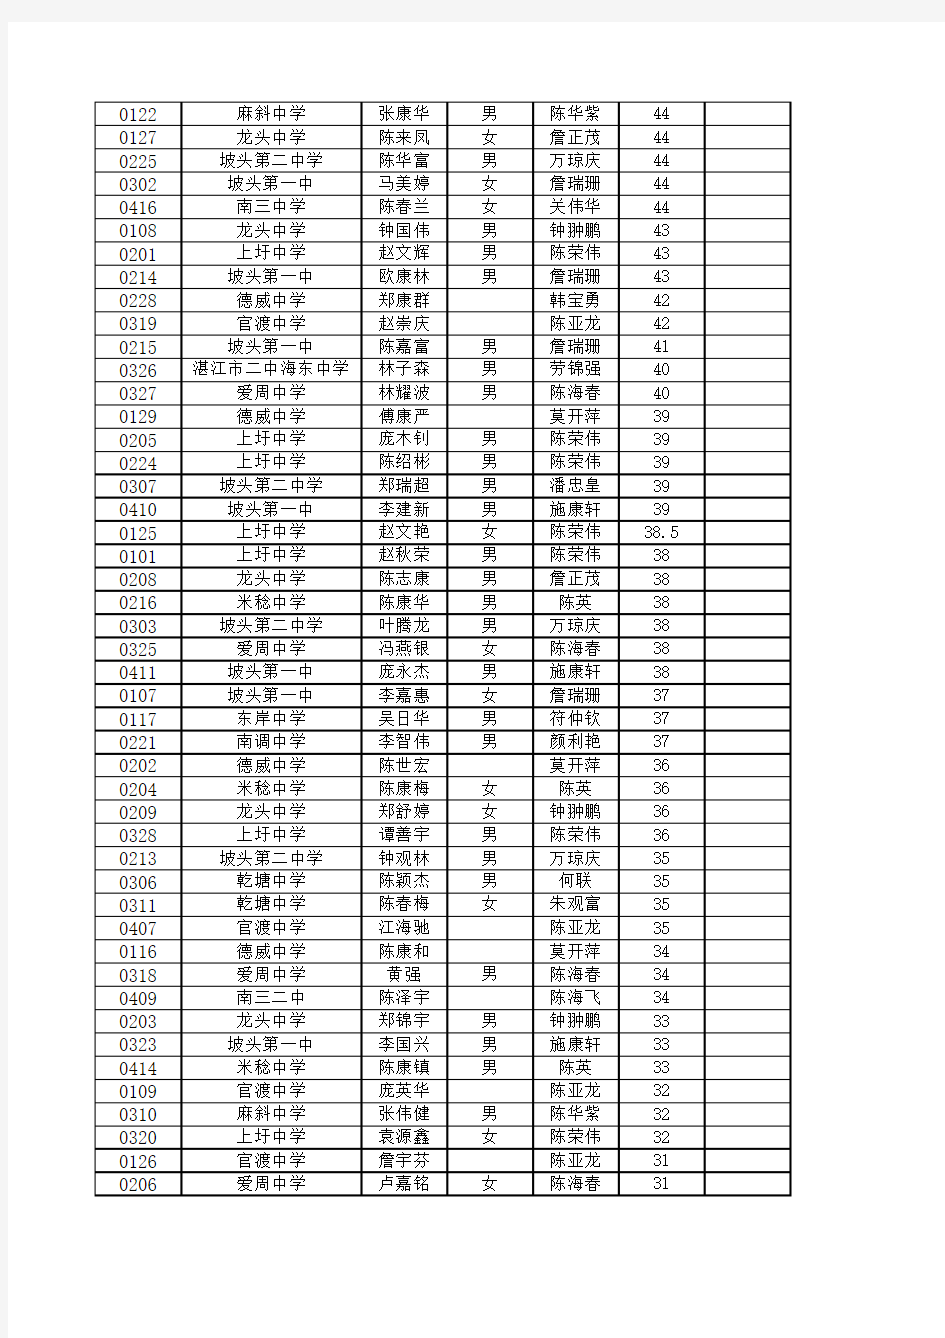 2011年坡头区初中物理竞赛登分表.25xls2